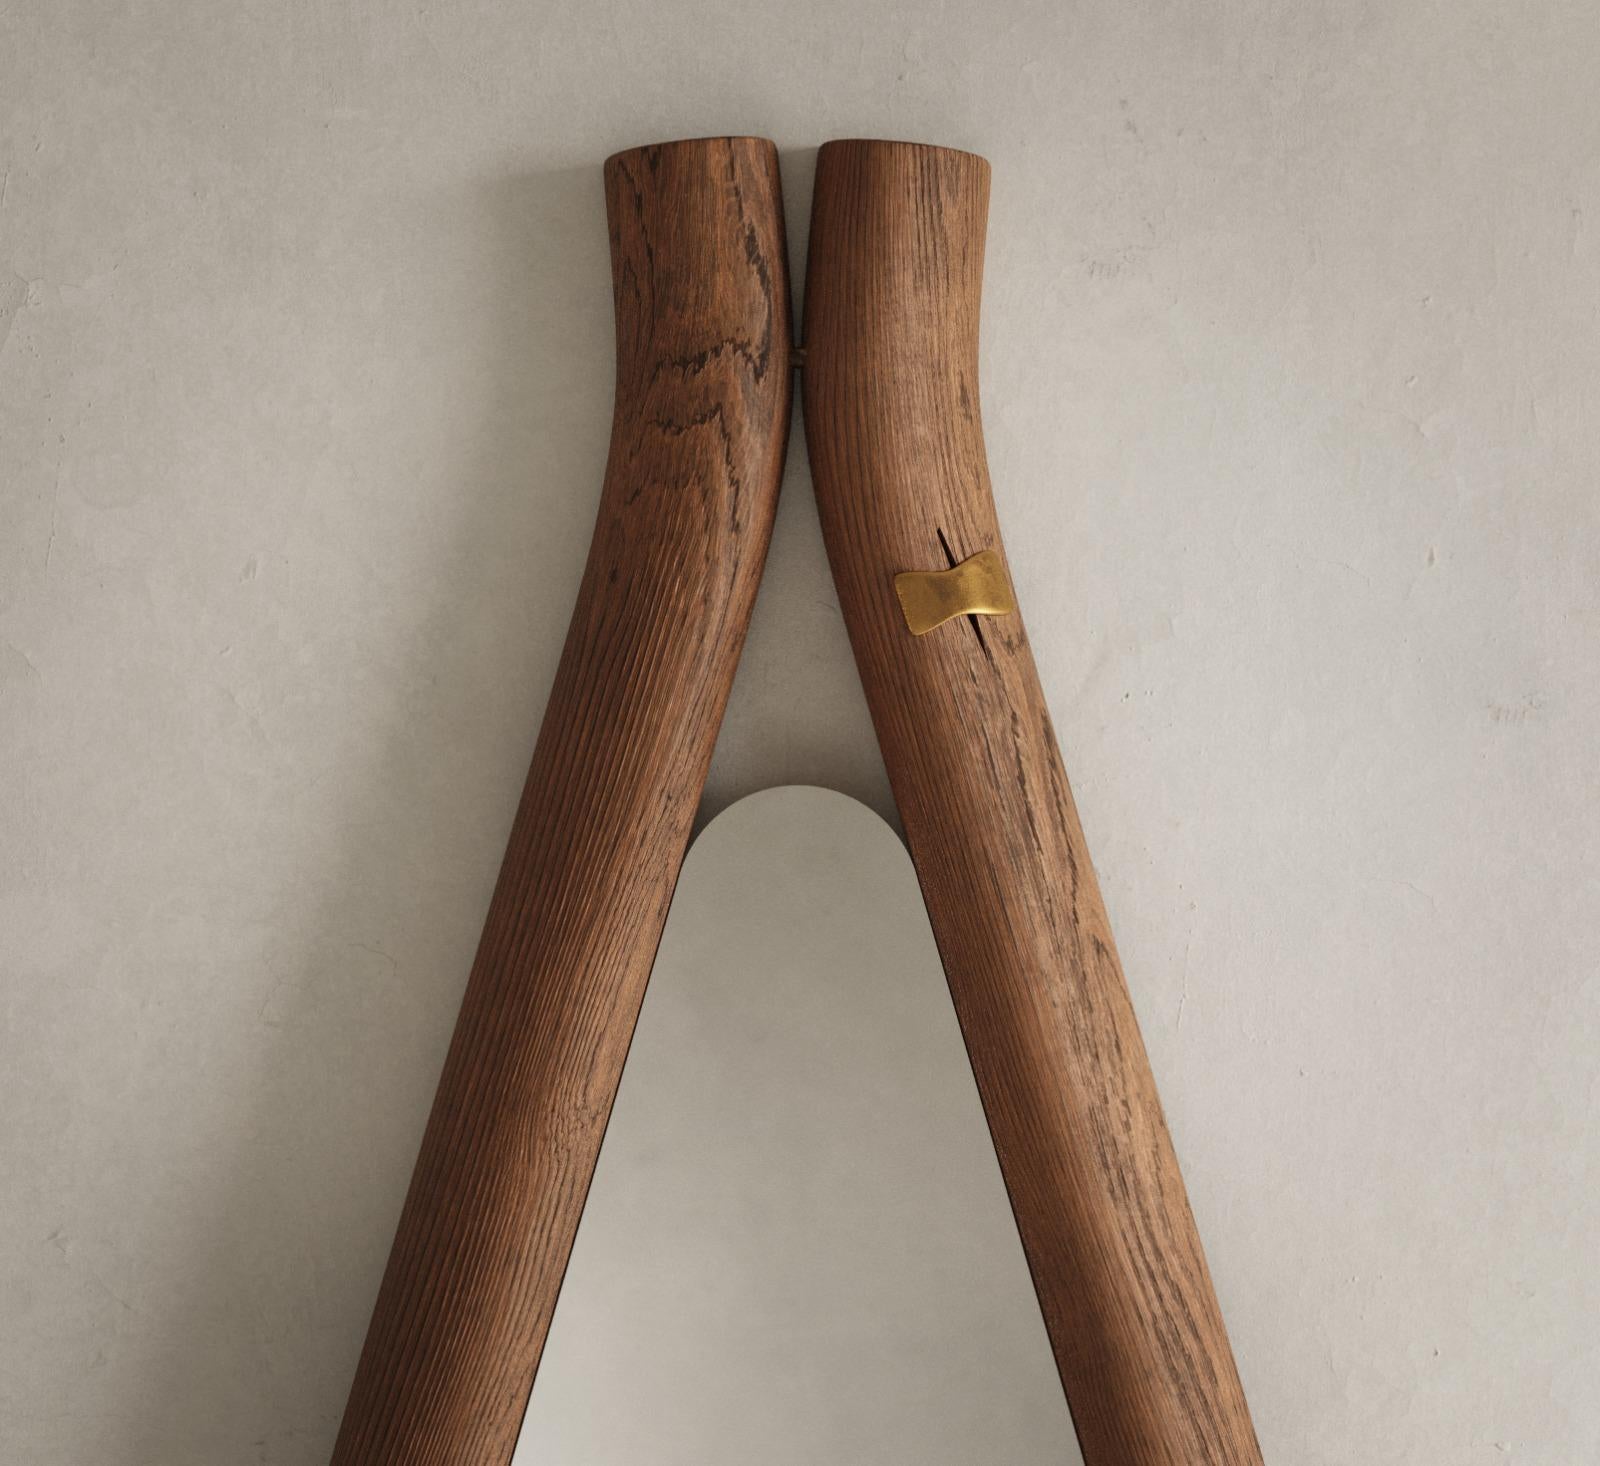 Le miroir de sol Ayo est un meuble artisanal qui combine le bois massif et le bronze liquide pour un aspect unique. Le miroir est fabriqué à l'aide de techniques traditionnelles telles que l'artisanat et le moulage, ce qui garantit que chaque pièce